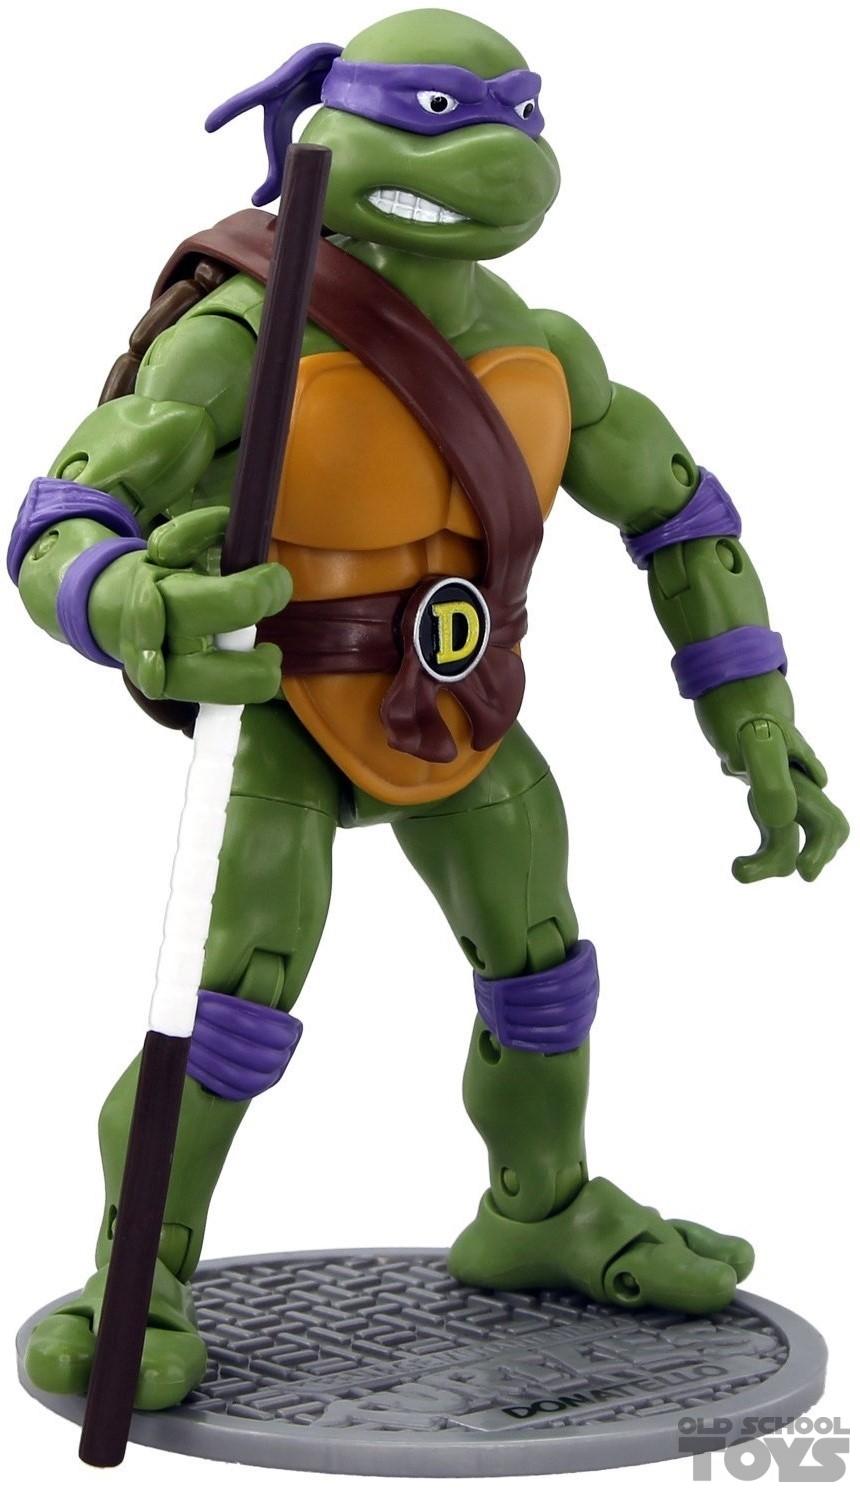 Overvloedig Leia ik klaag Teenage Mutant Ninja Turtles Donatello (classic collection) Playmates  compleet | Old School Toys